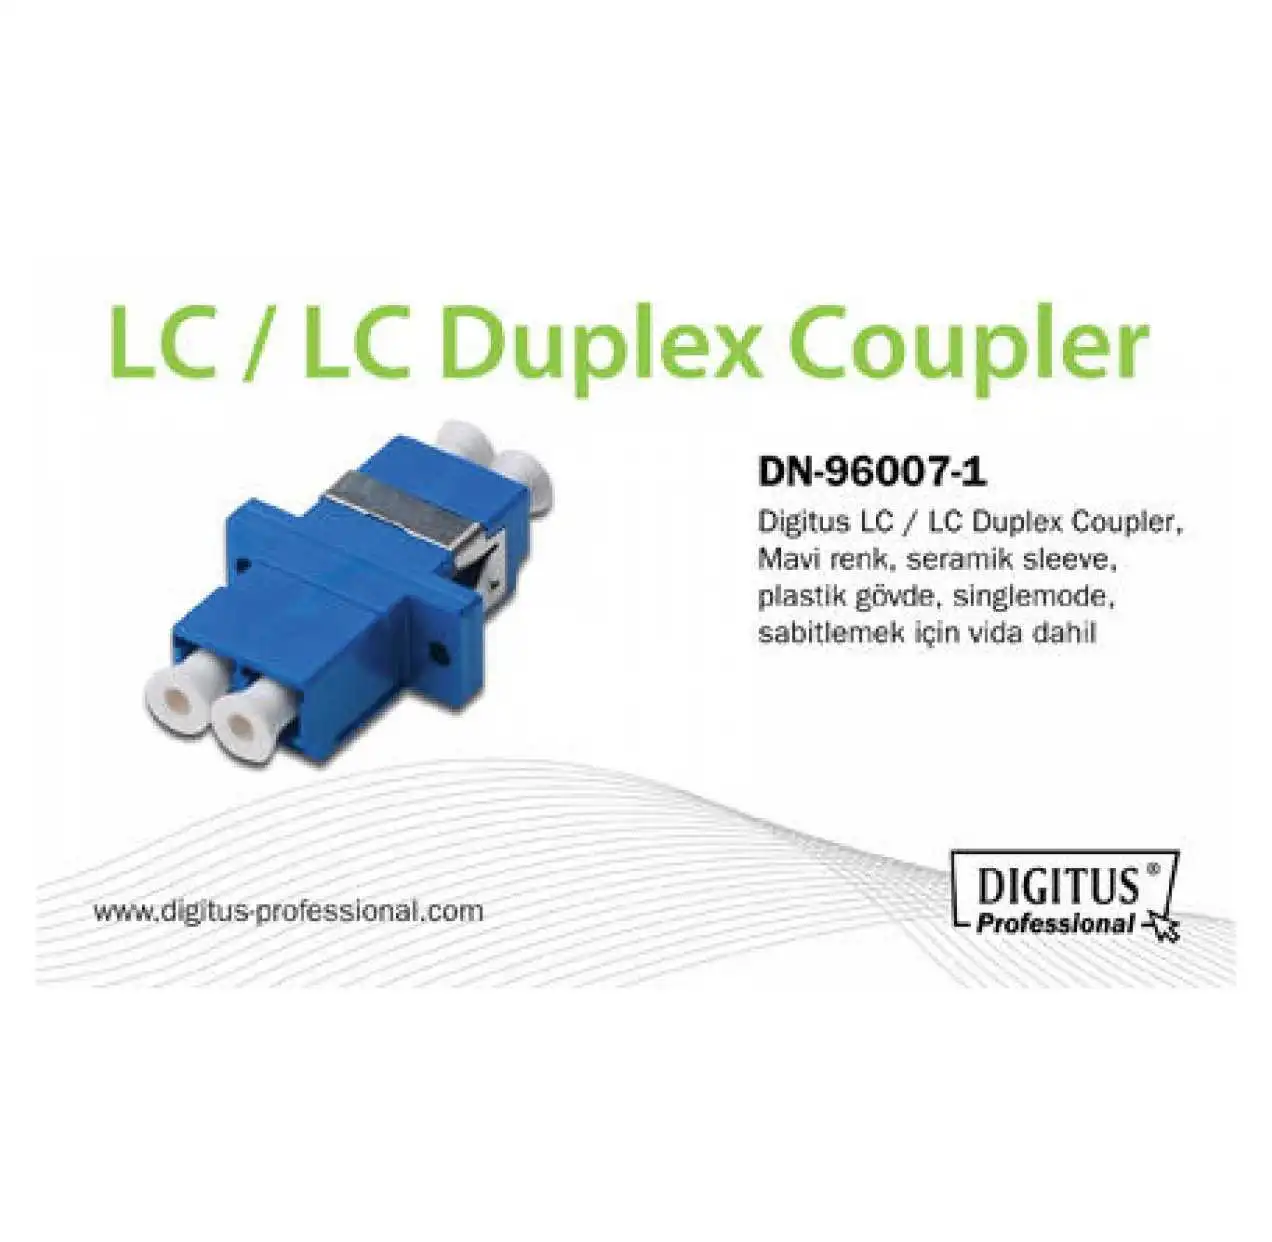 dIgItus-dn-96007-1-lc-lc-duplex-coupler-ürün-resmi